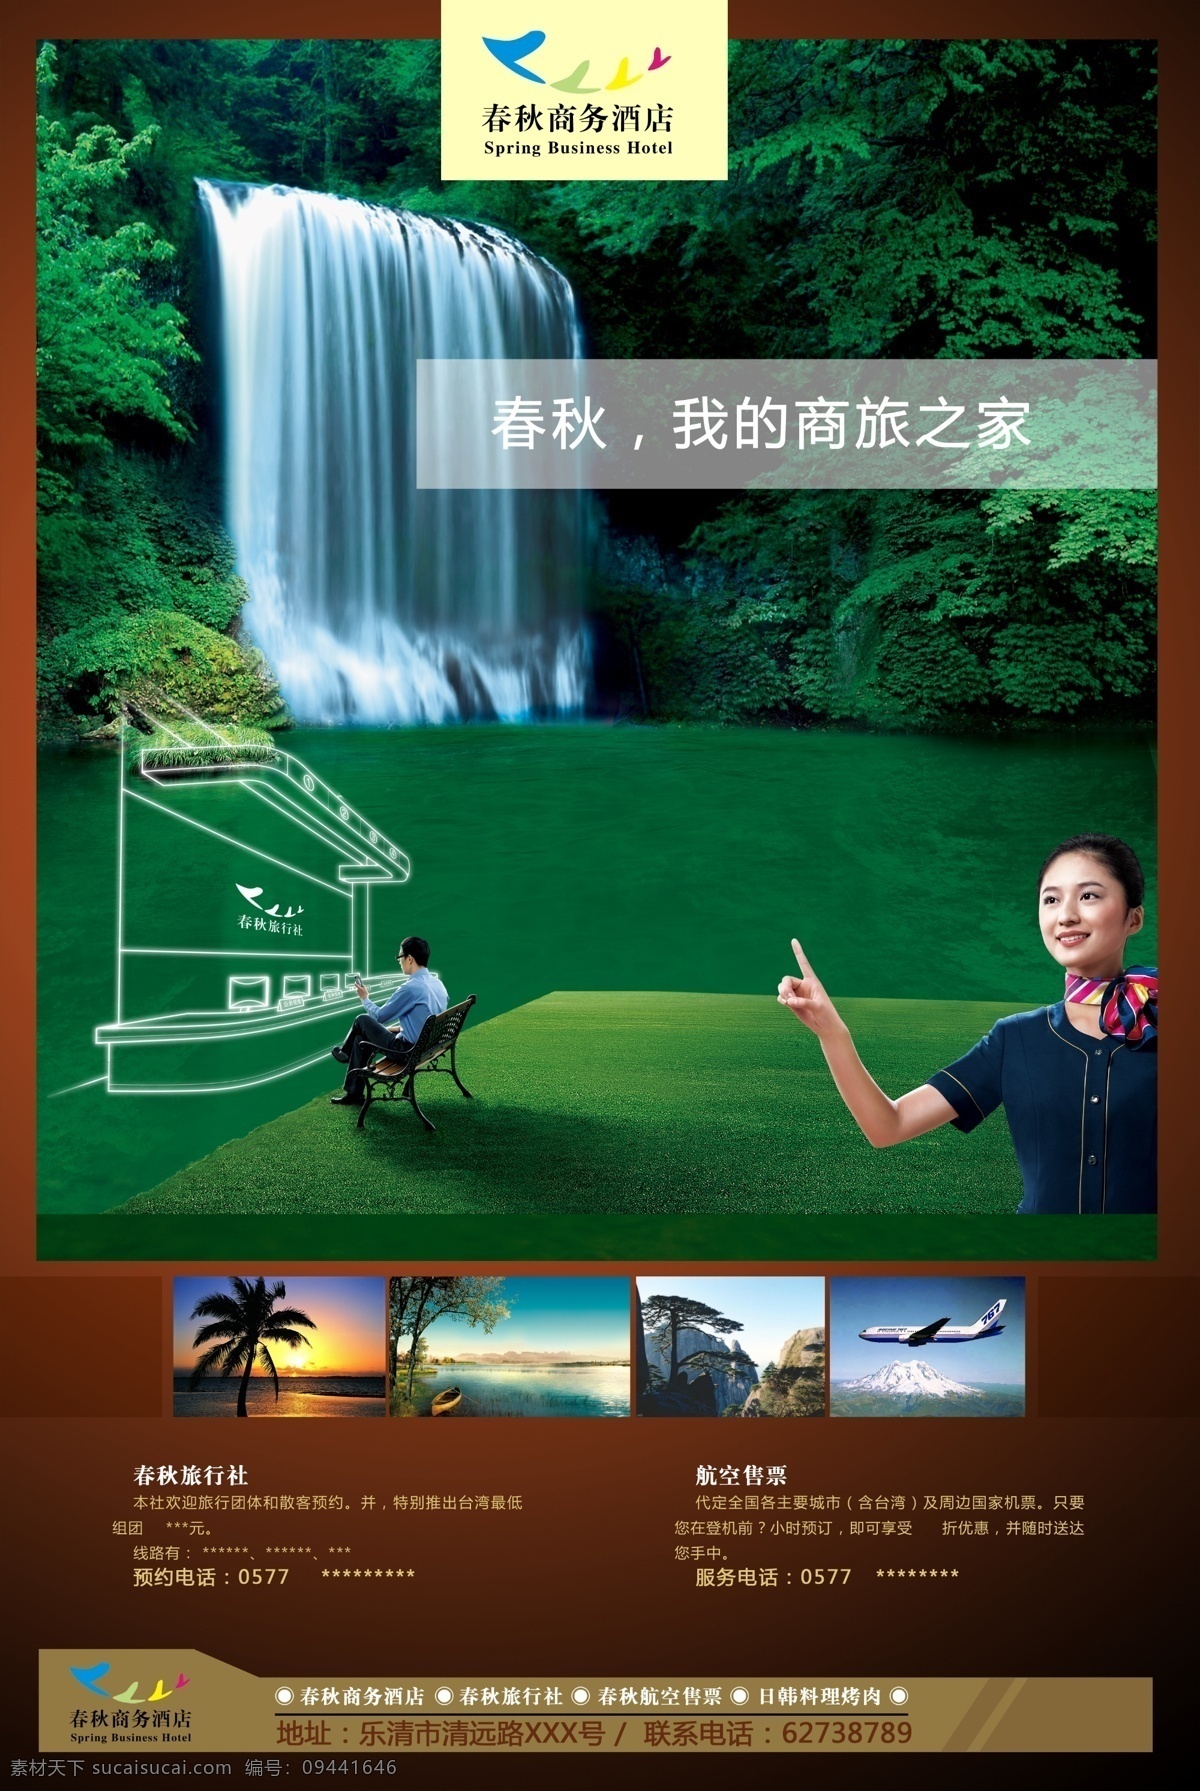 商务 旅行社 宣传 广告 商务旅行社 风景 创意 航空 宣传广告 绿色 分层 红色